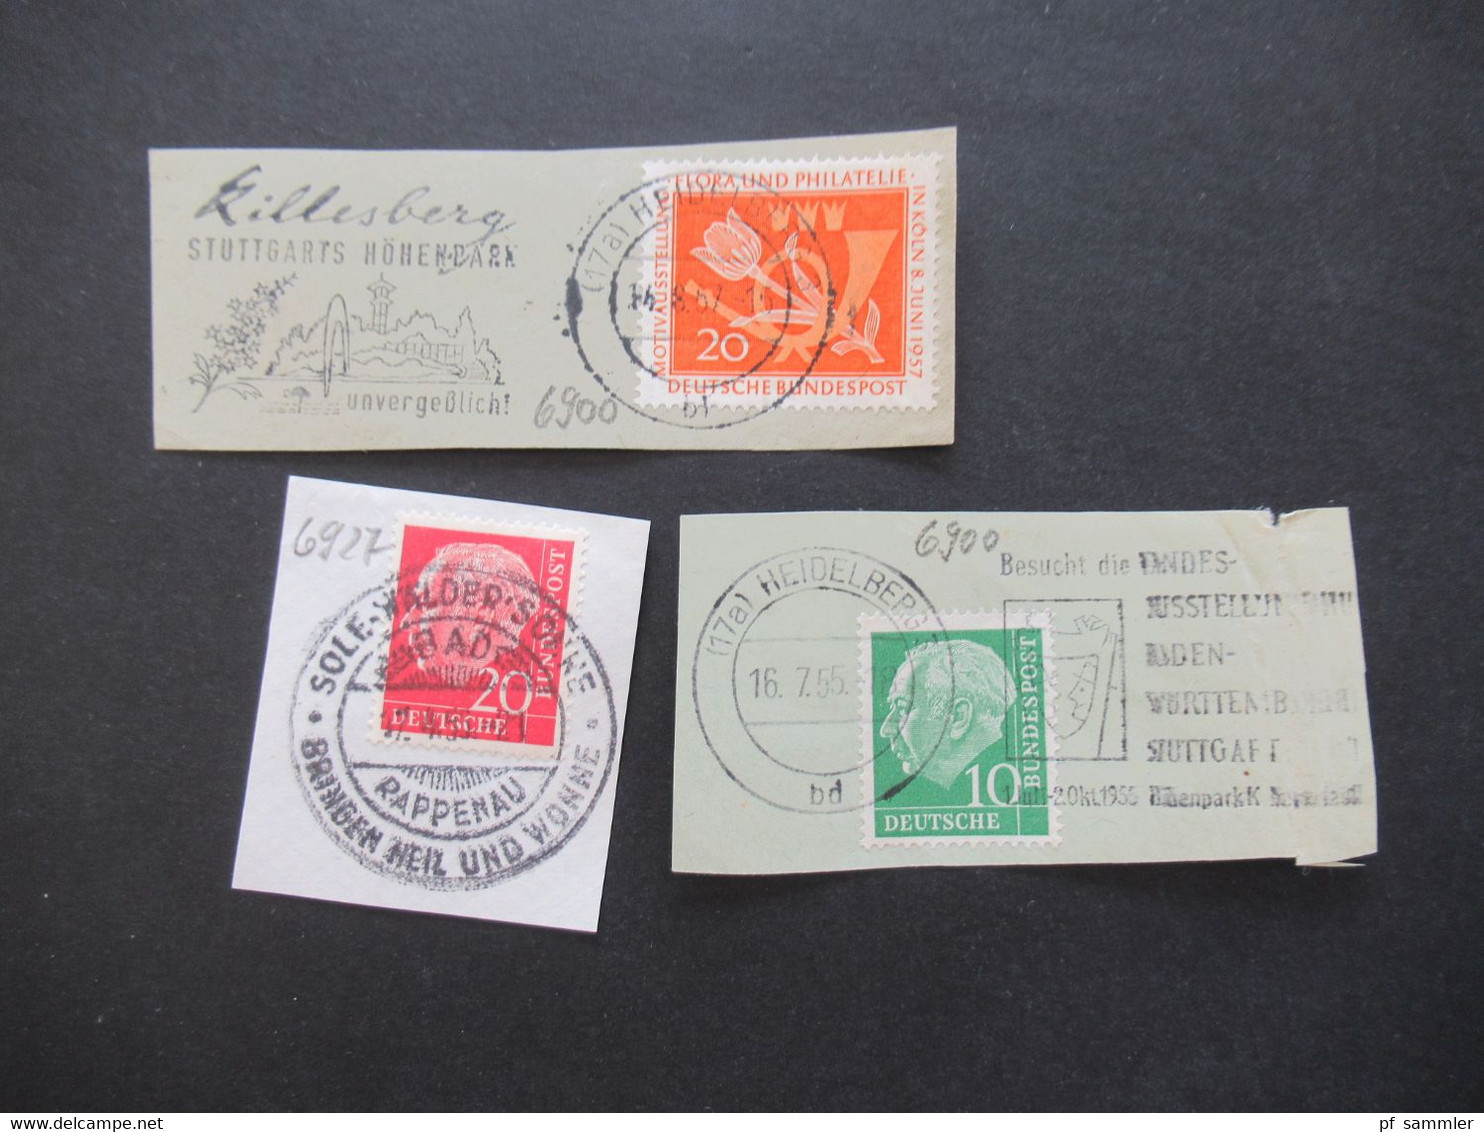 BRD ab Posthorn Nr. 123 Jahre 1954 - 61 Briefstücke / Blankozettel mit Sonderstempel Heidelberg verschiedene SST